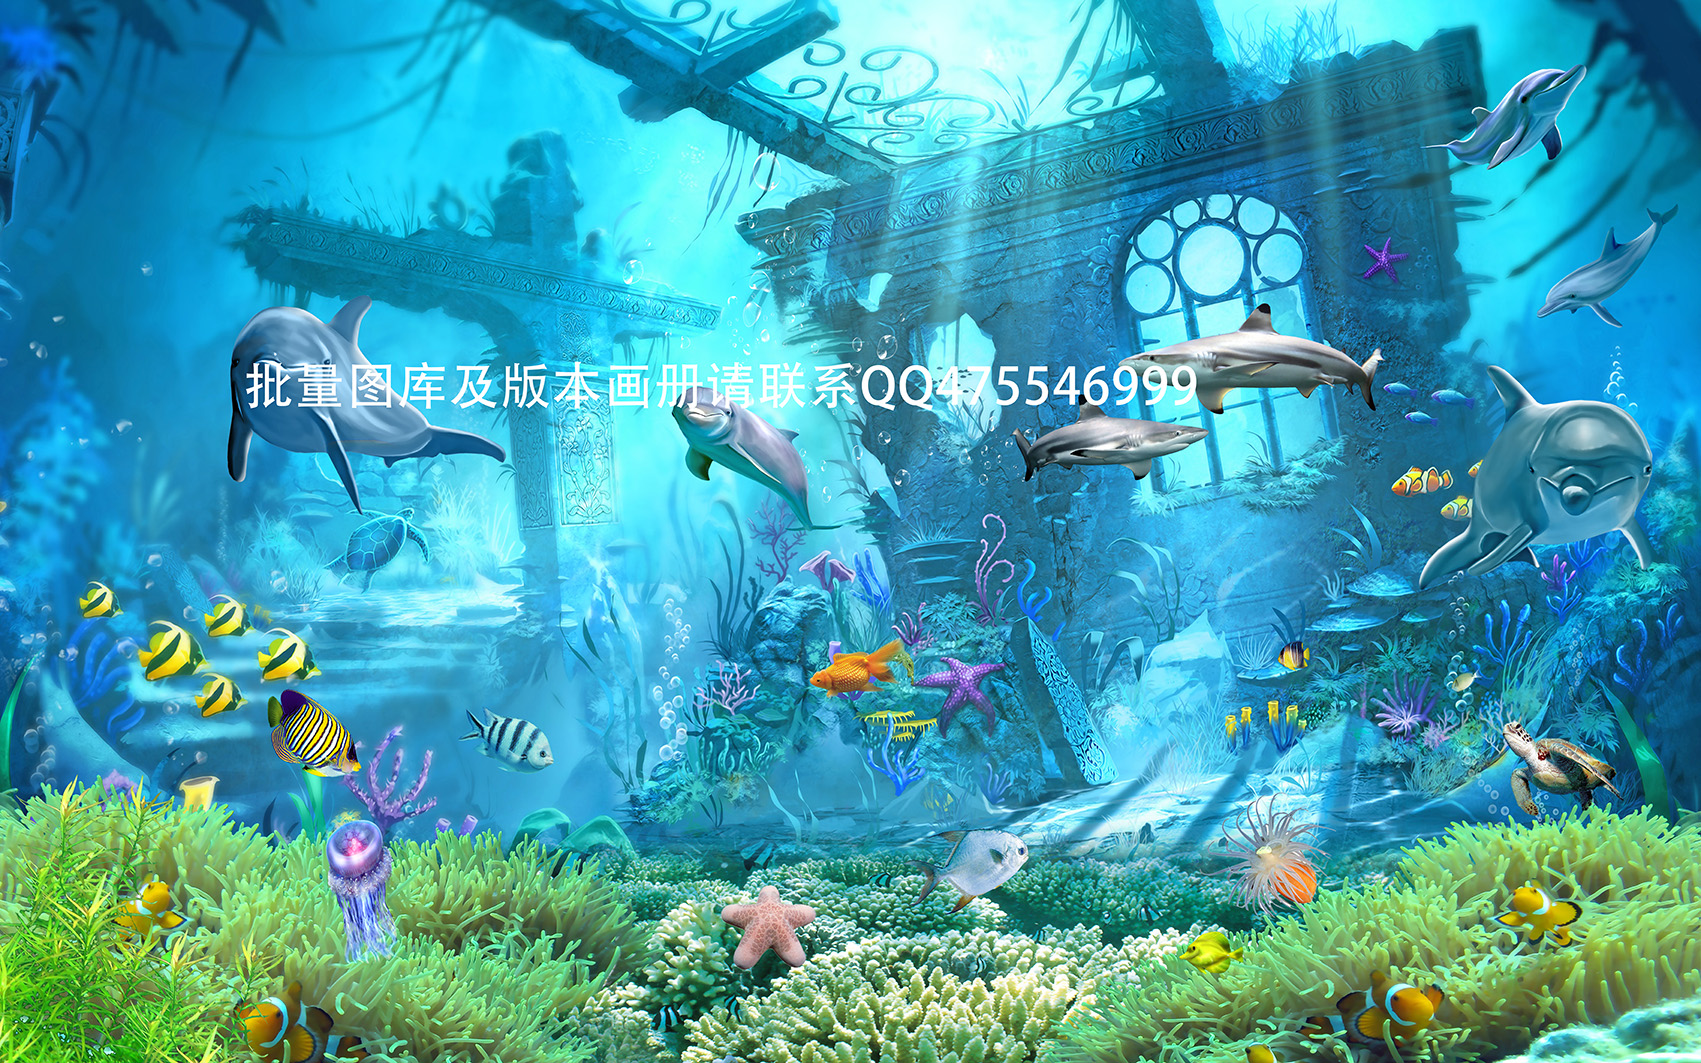 Hình ảnh tranh dán tường 3D con cá humandecor----2799